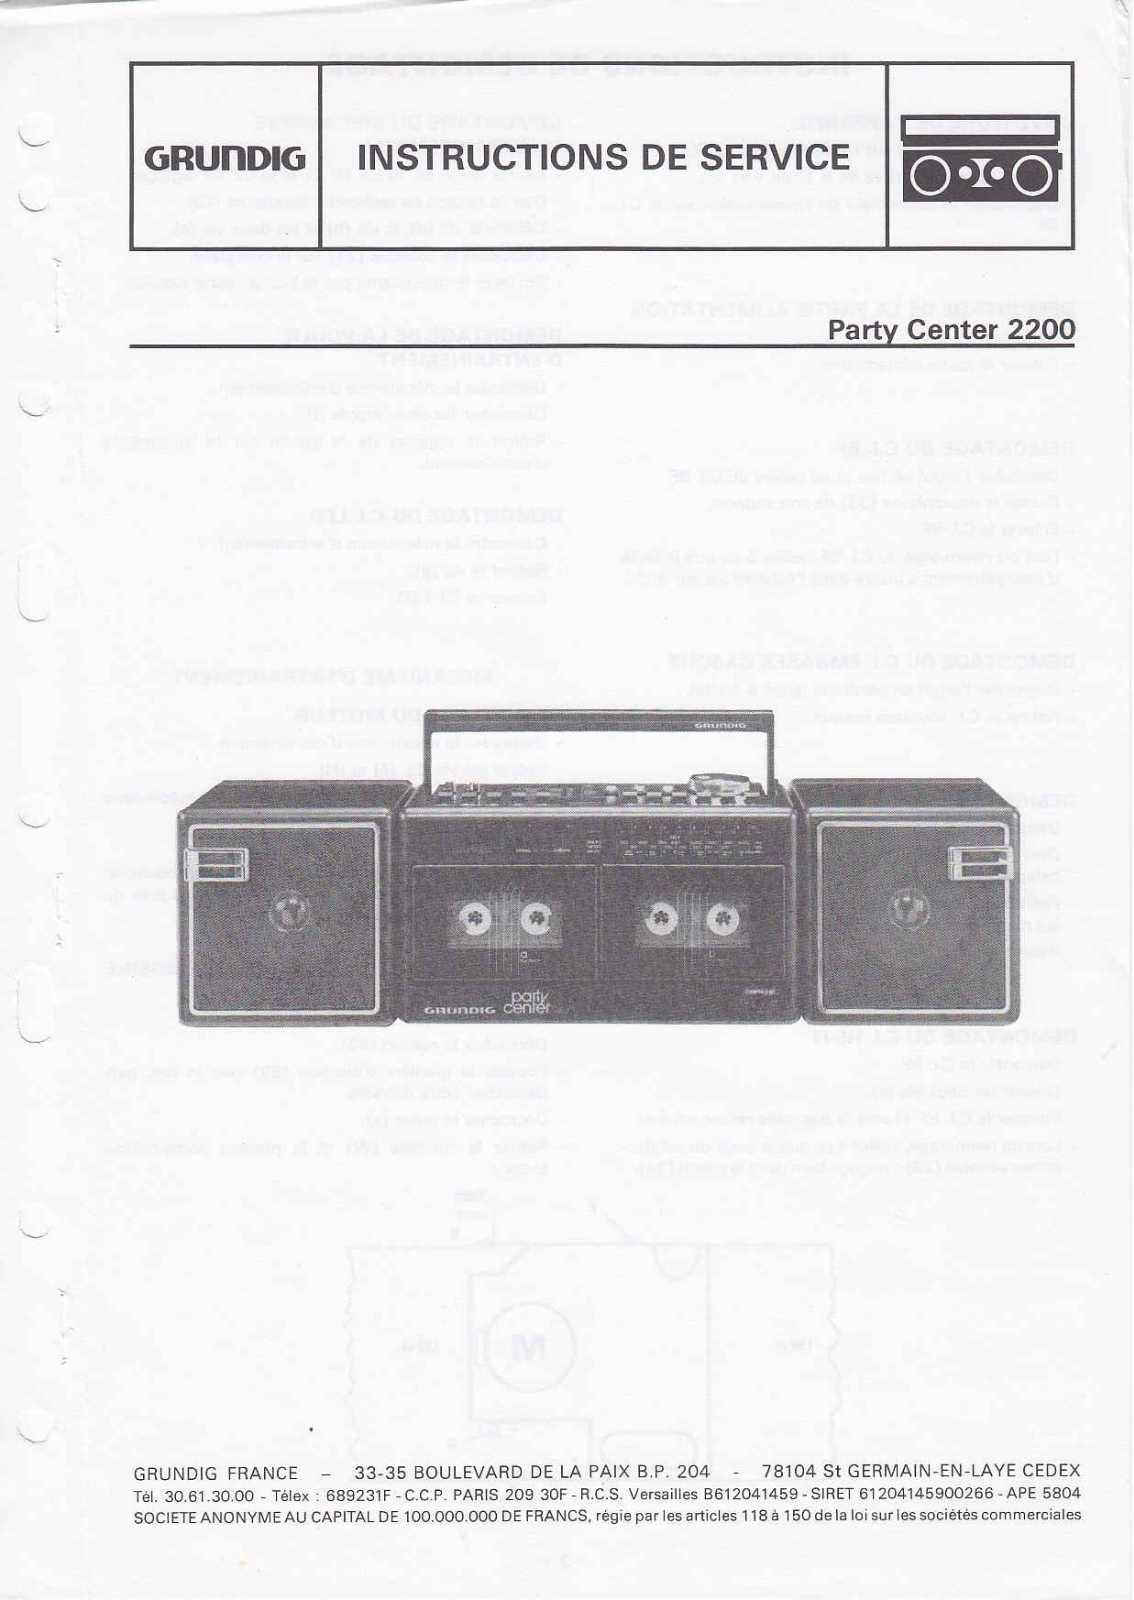 Grundig MV-4-Party-Center-2200 Service Manual